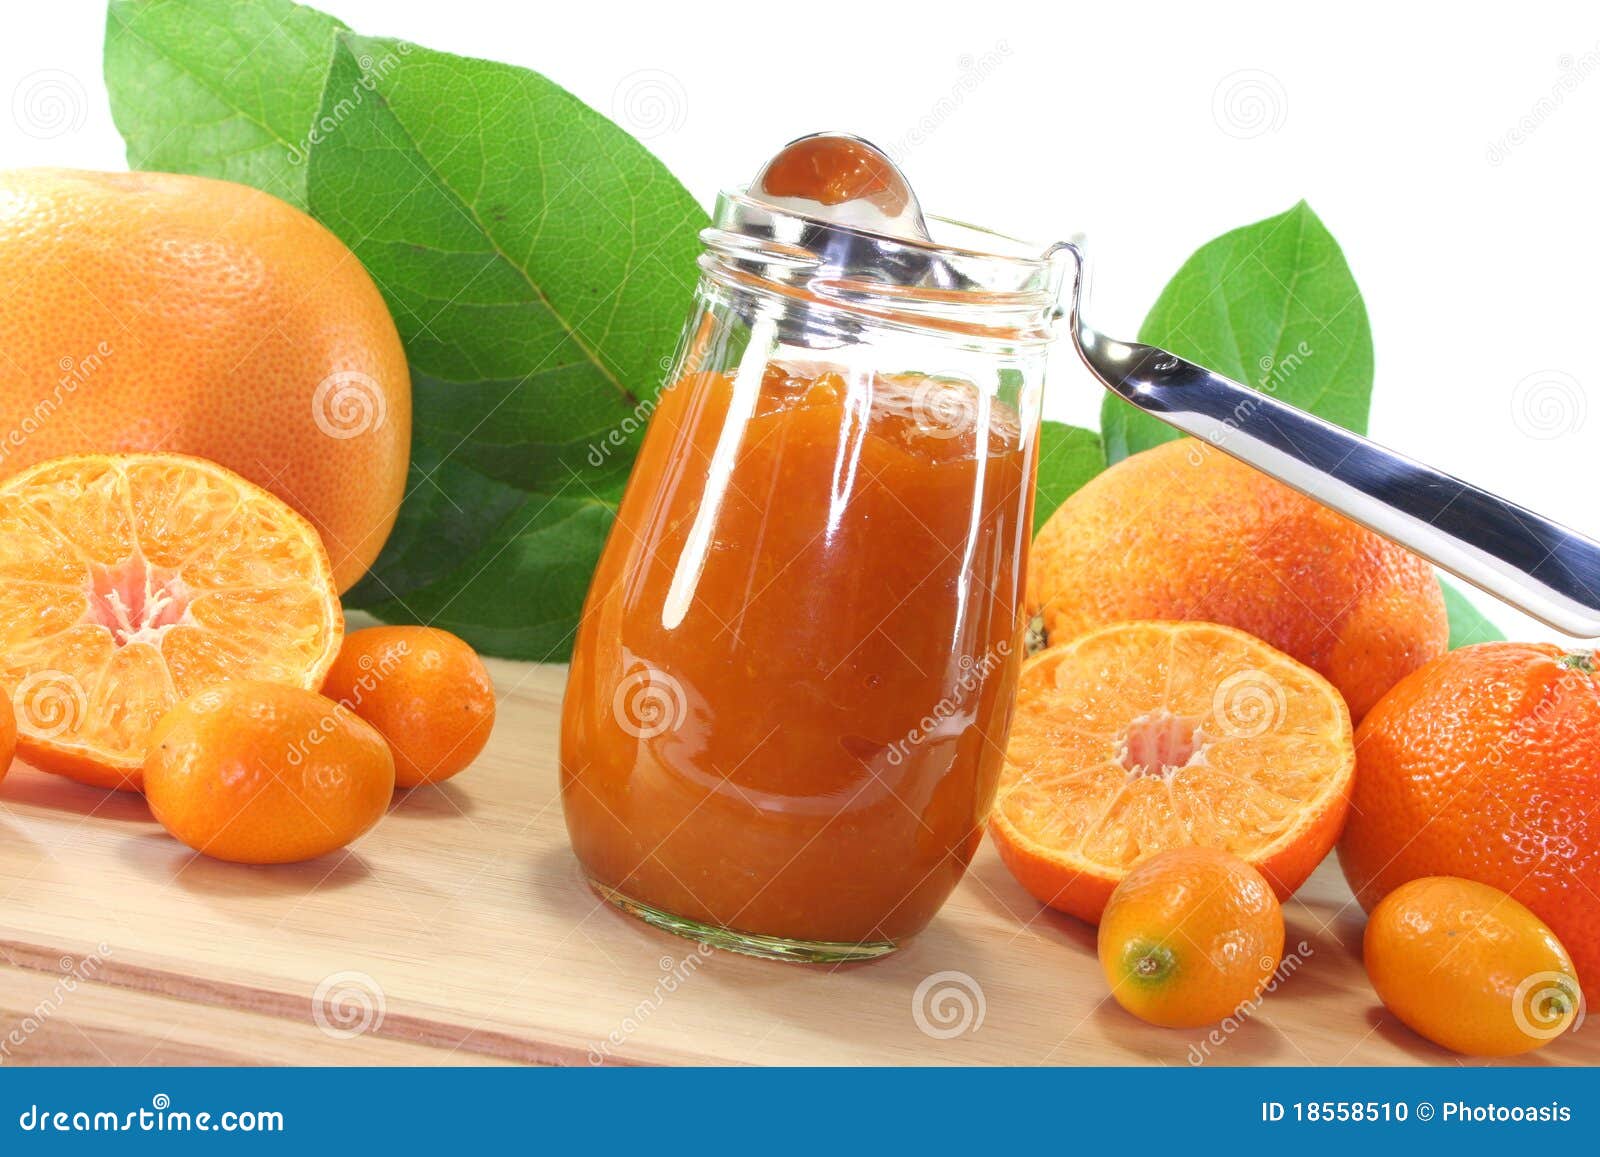  Orange jam  stock photo Image of nutrition mandarins 